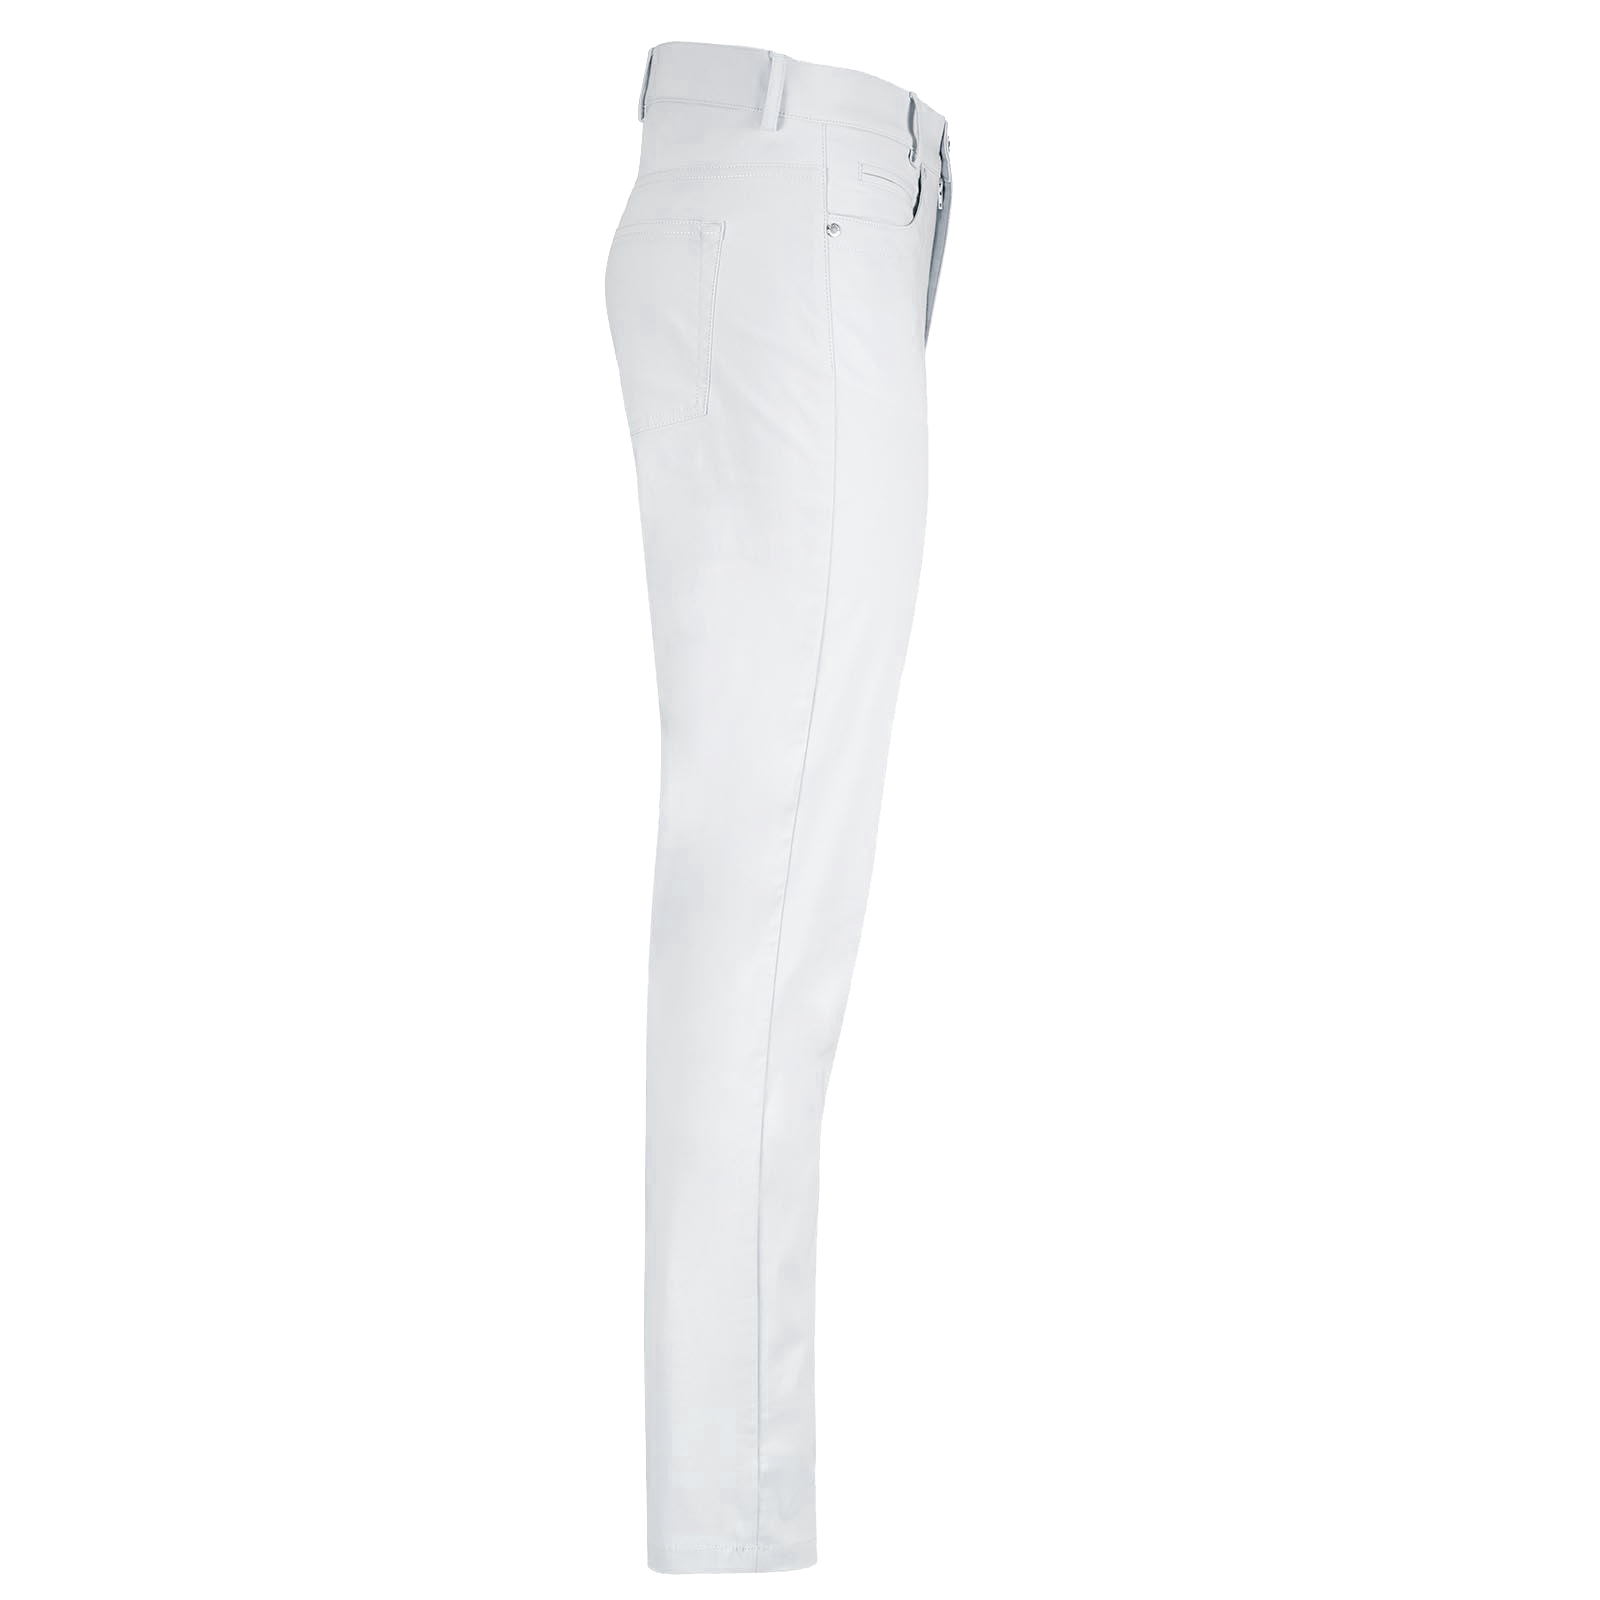 Pantaloni donna 7/8 con 5 tasche e in tessuto elasticizzato con funzione di protezione solare